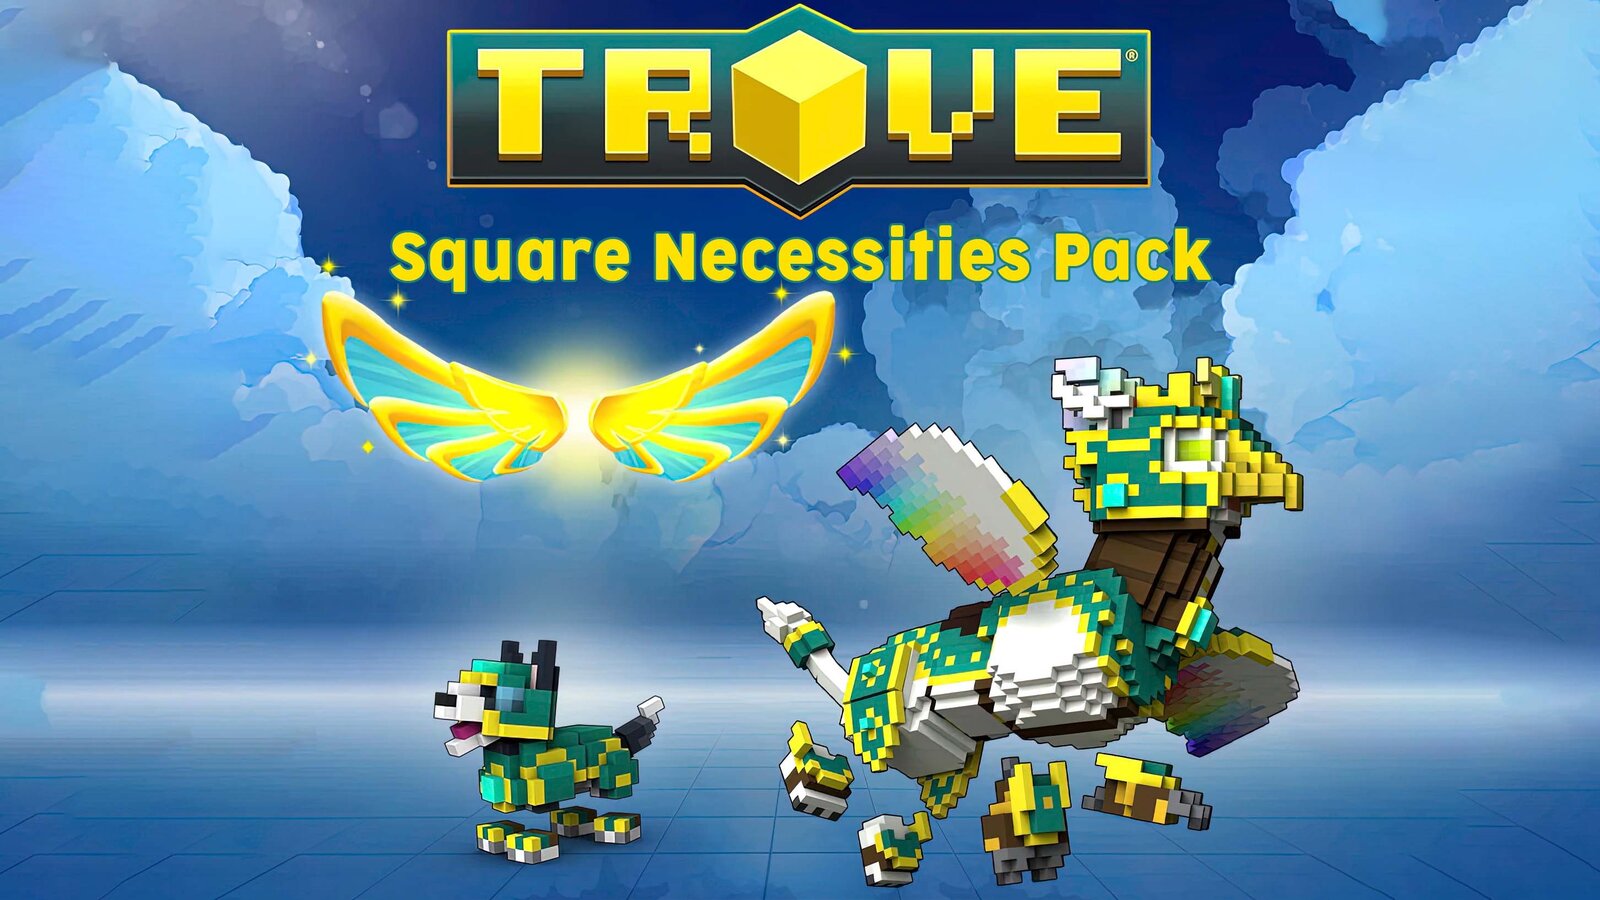 Trove - Square Necessities Pack